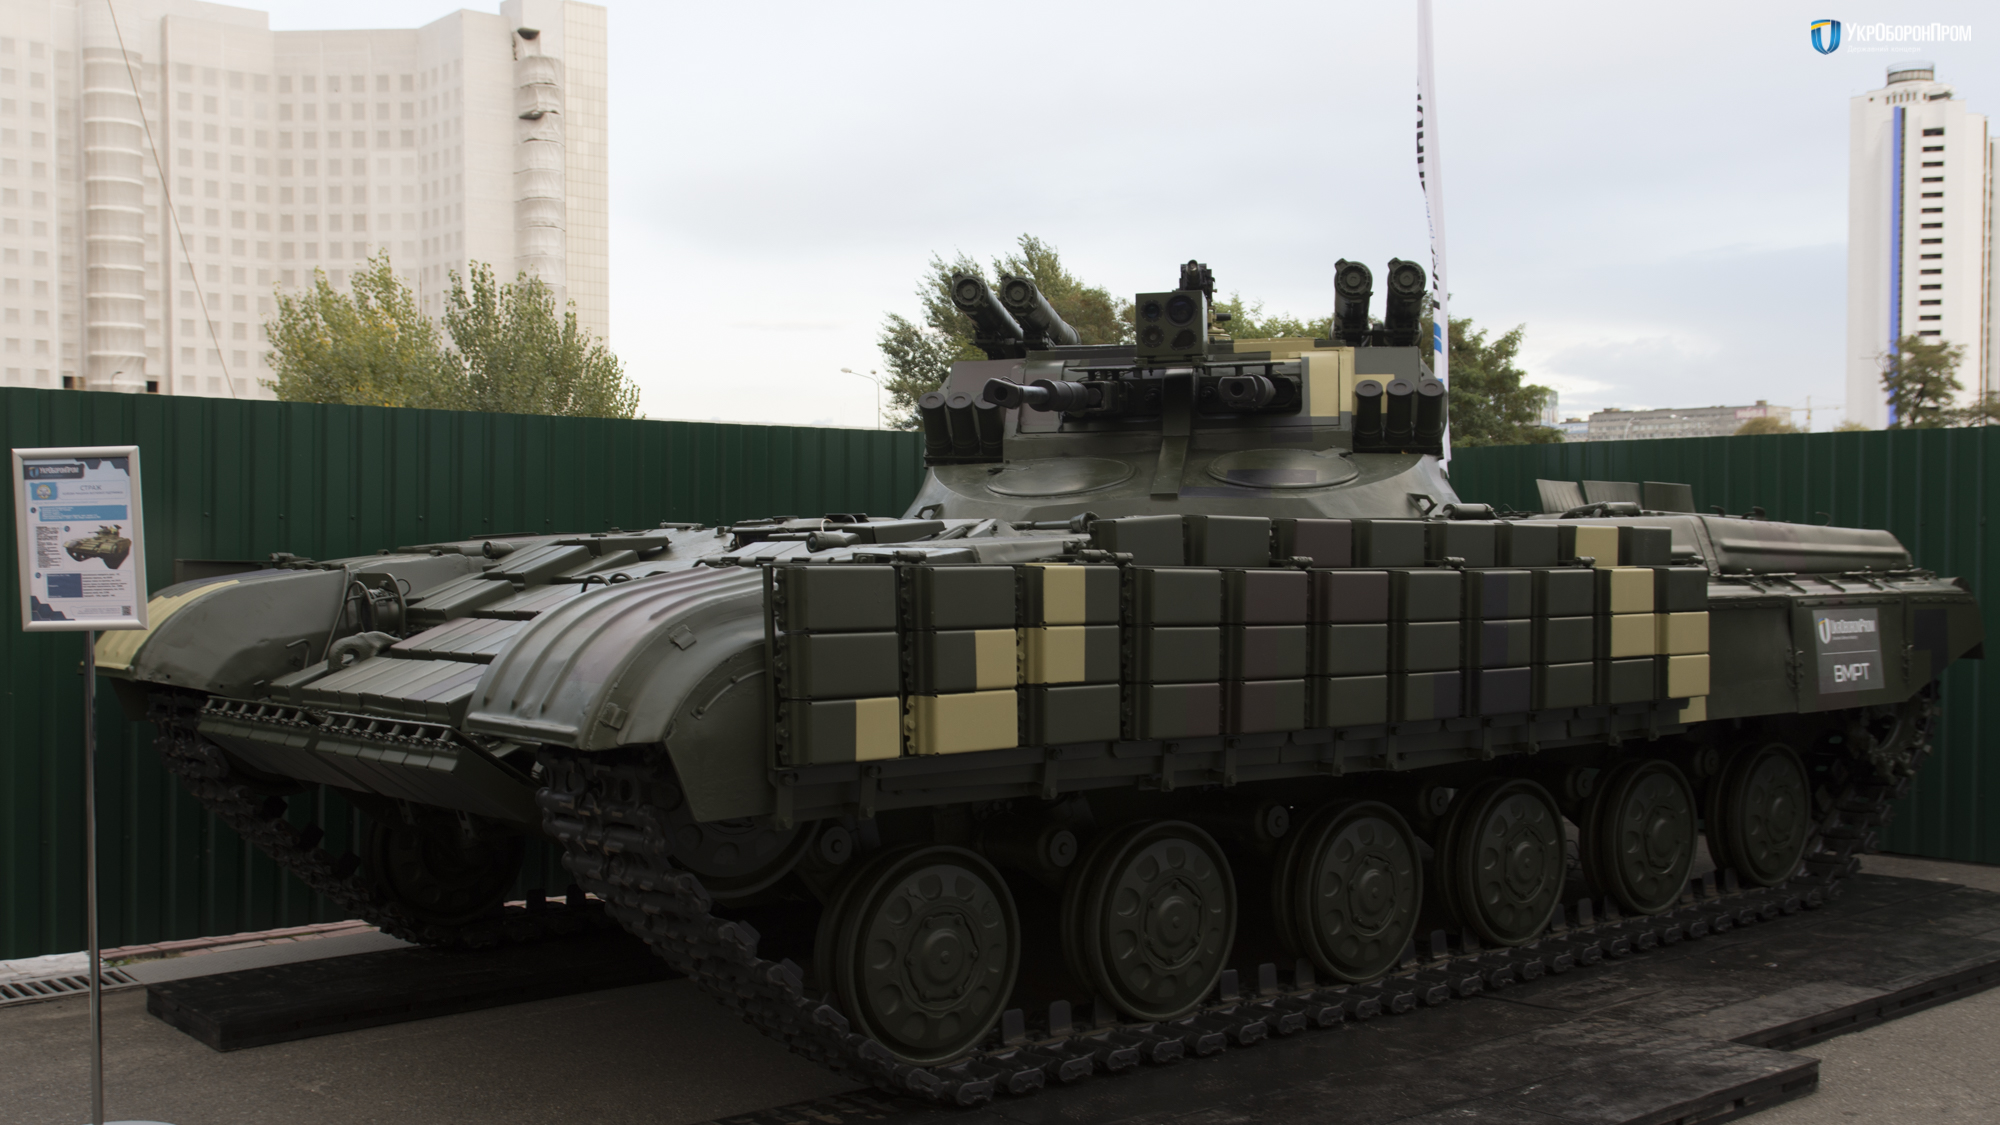 Перед таким вооружением ни один враг не устоит: "Укроборонпром" показал всему миру, как выглядит "Страж" - новая сверхмощная боевая машина. Кадры 